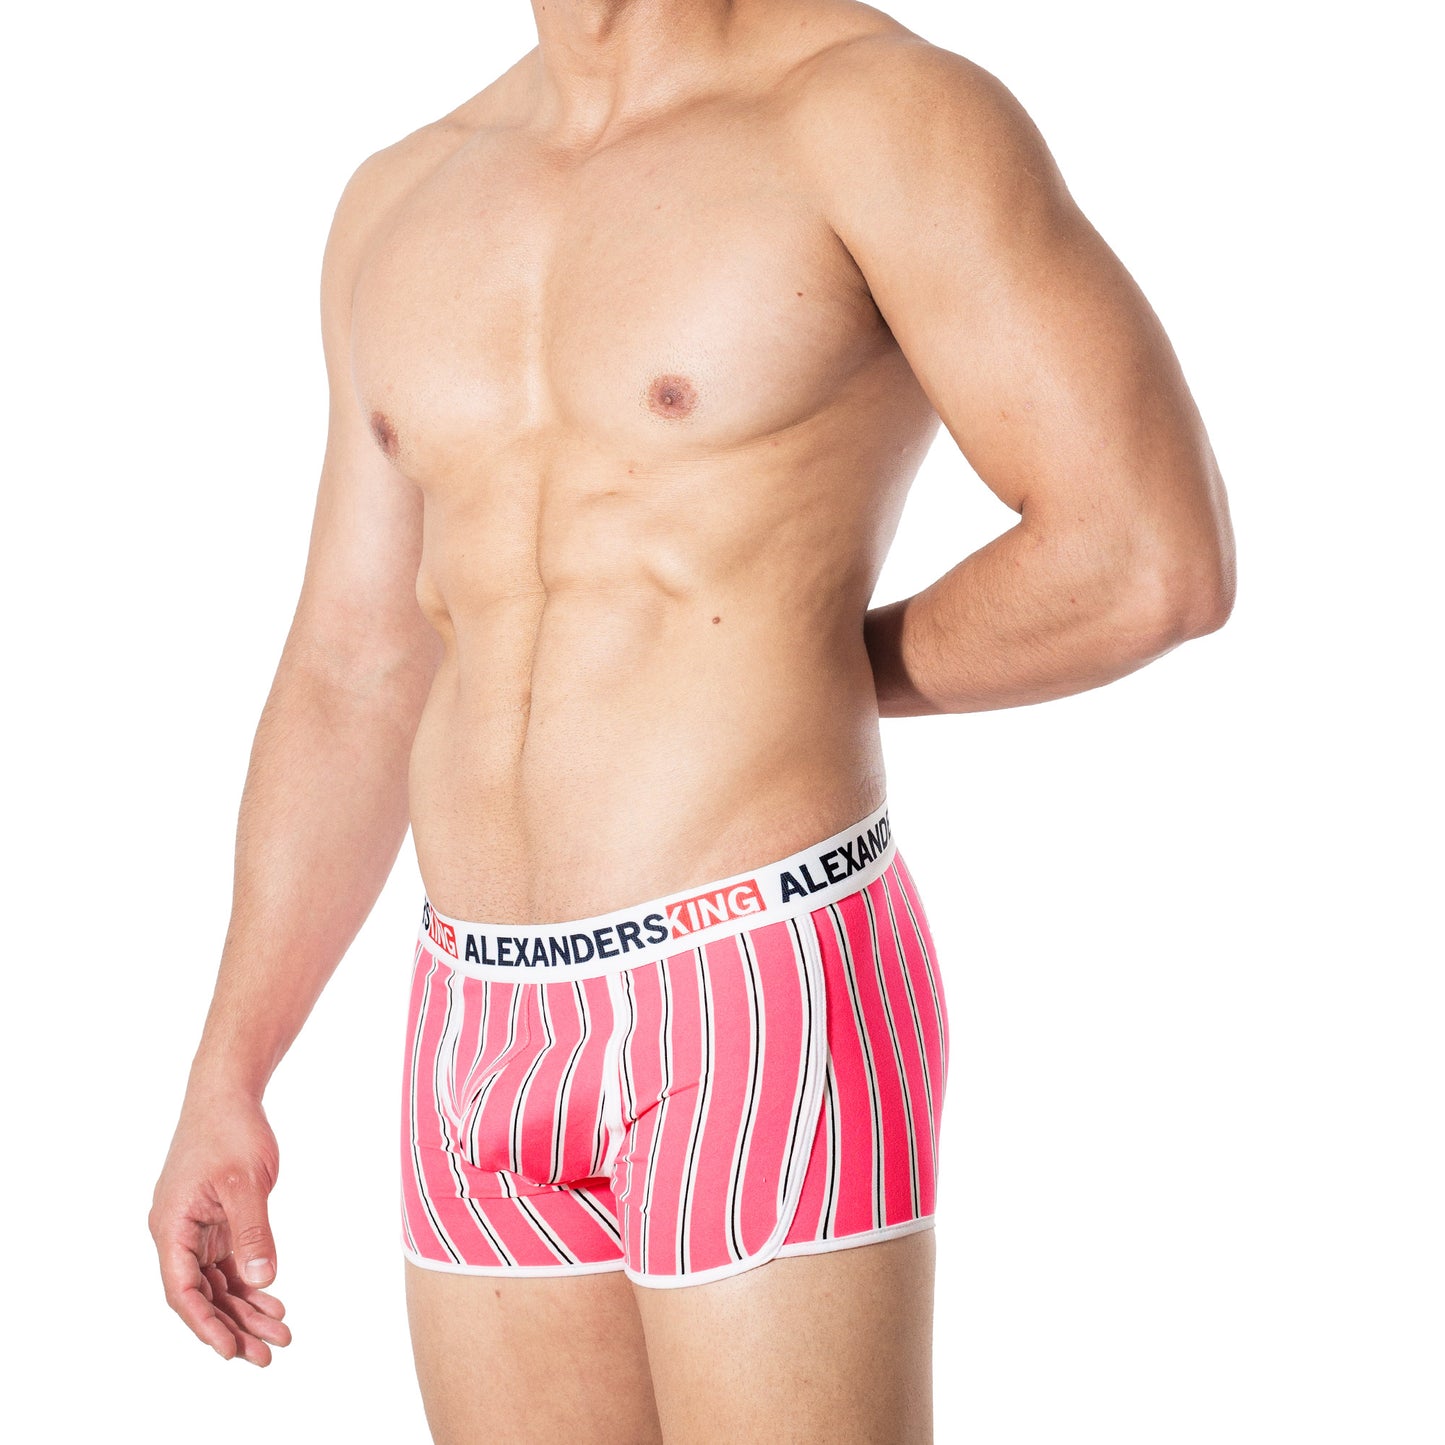 BP0041 Boxer Prime rosa neon con rayas blancas y negras skinit